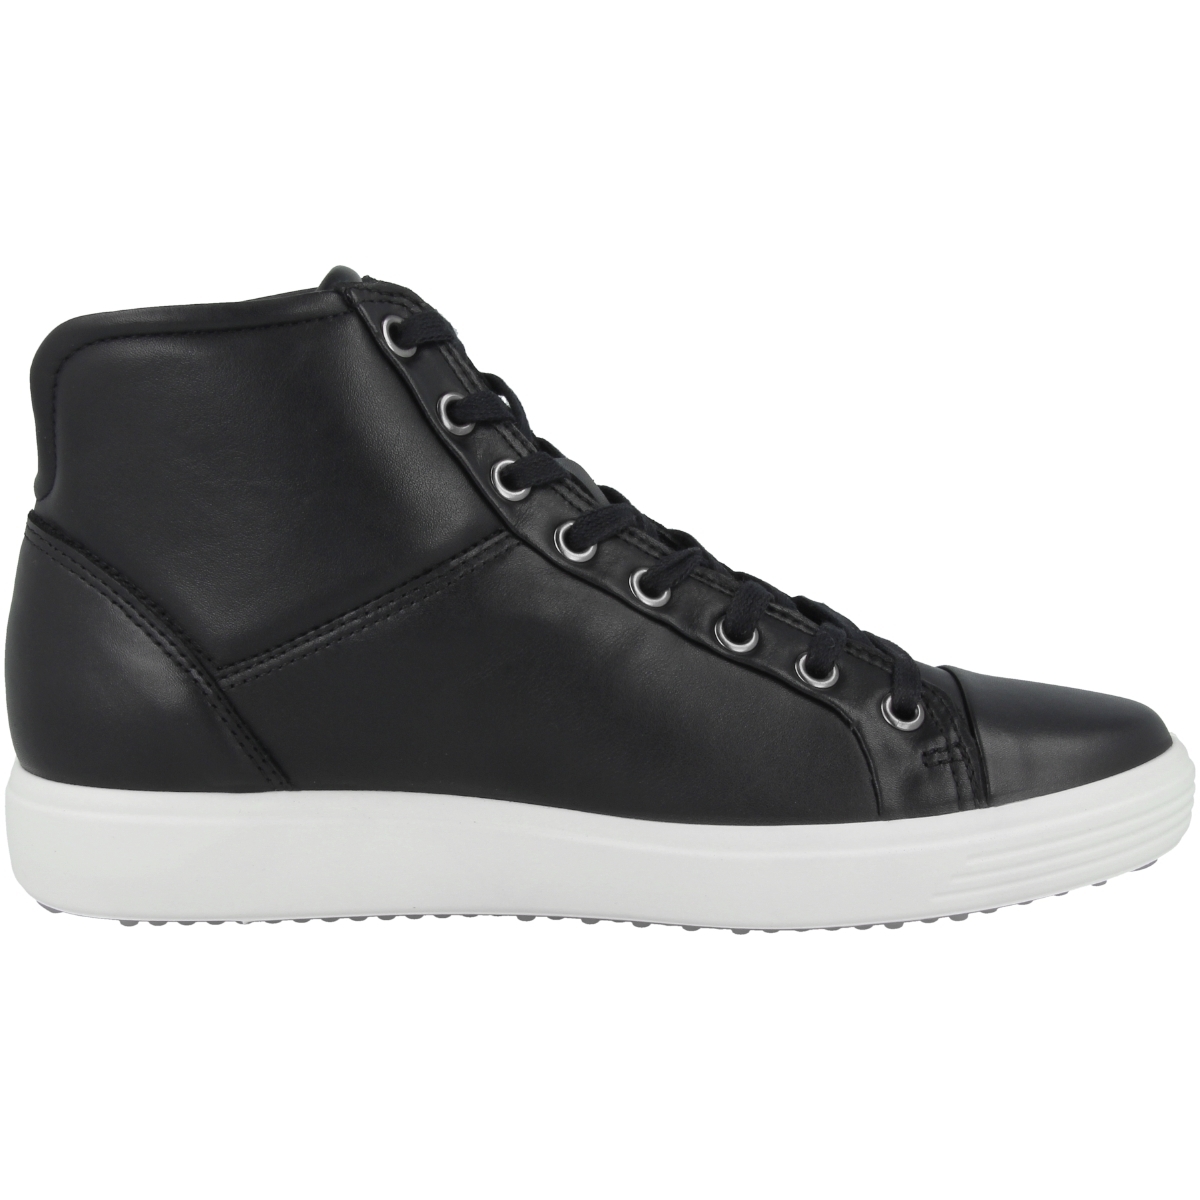 Ecco Soft 7 Mid Ladies Schuhe schwarz